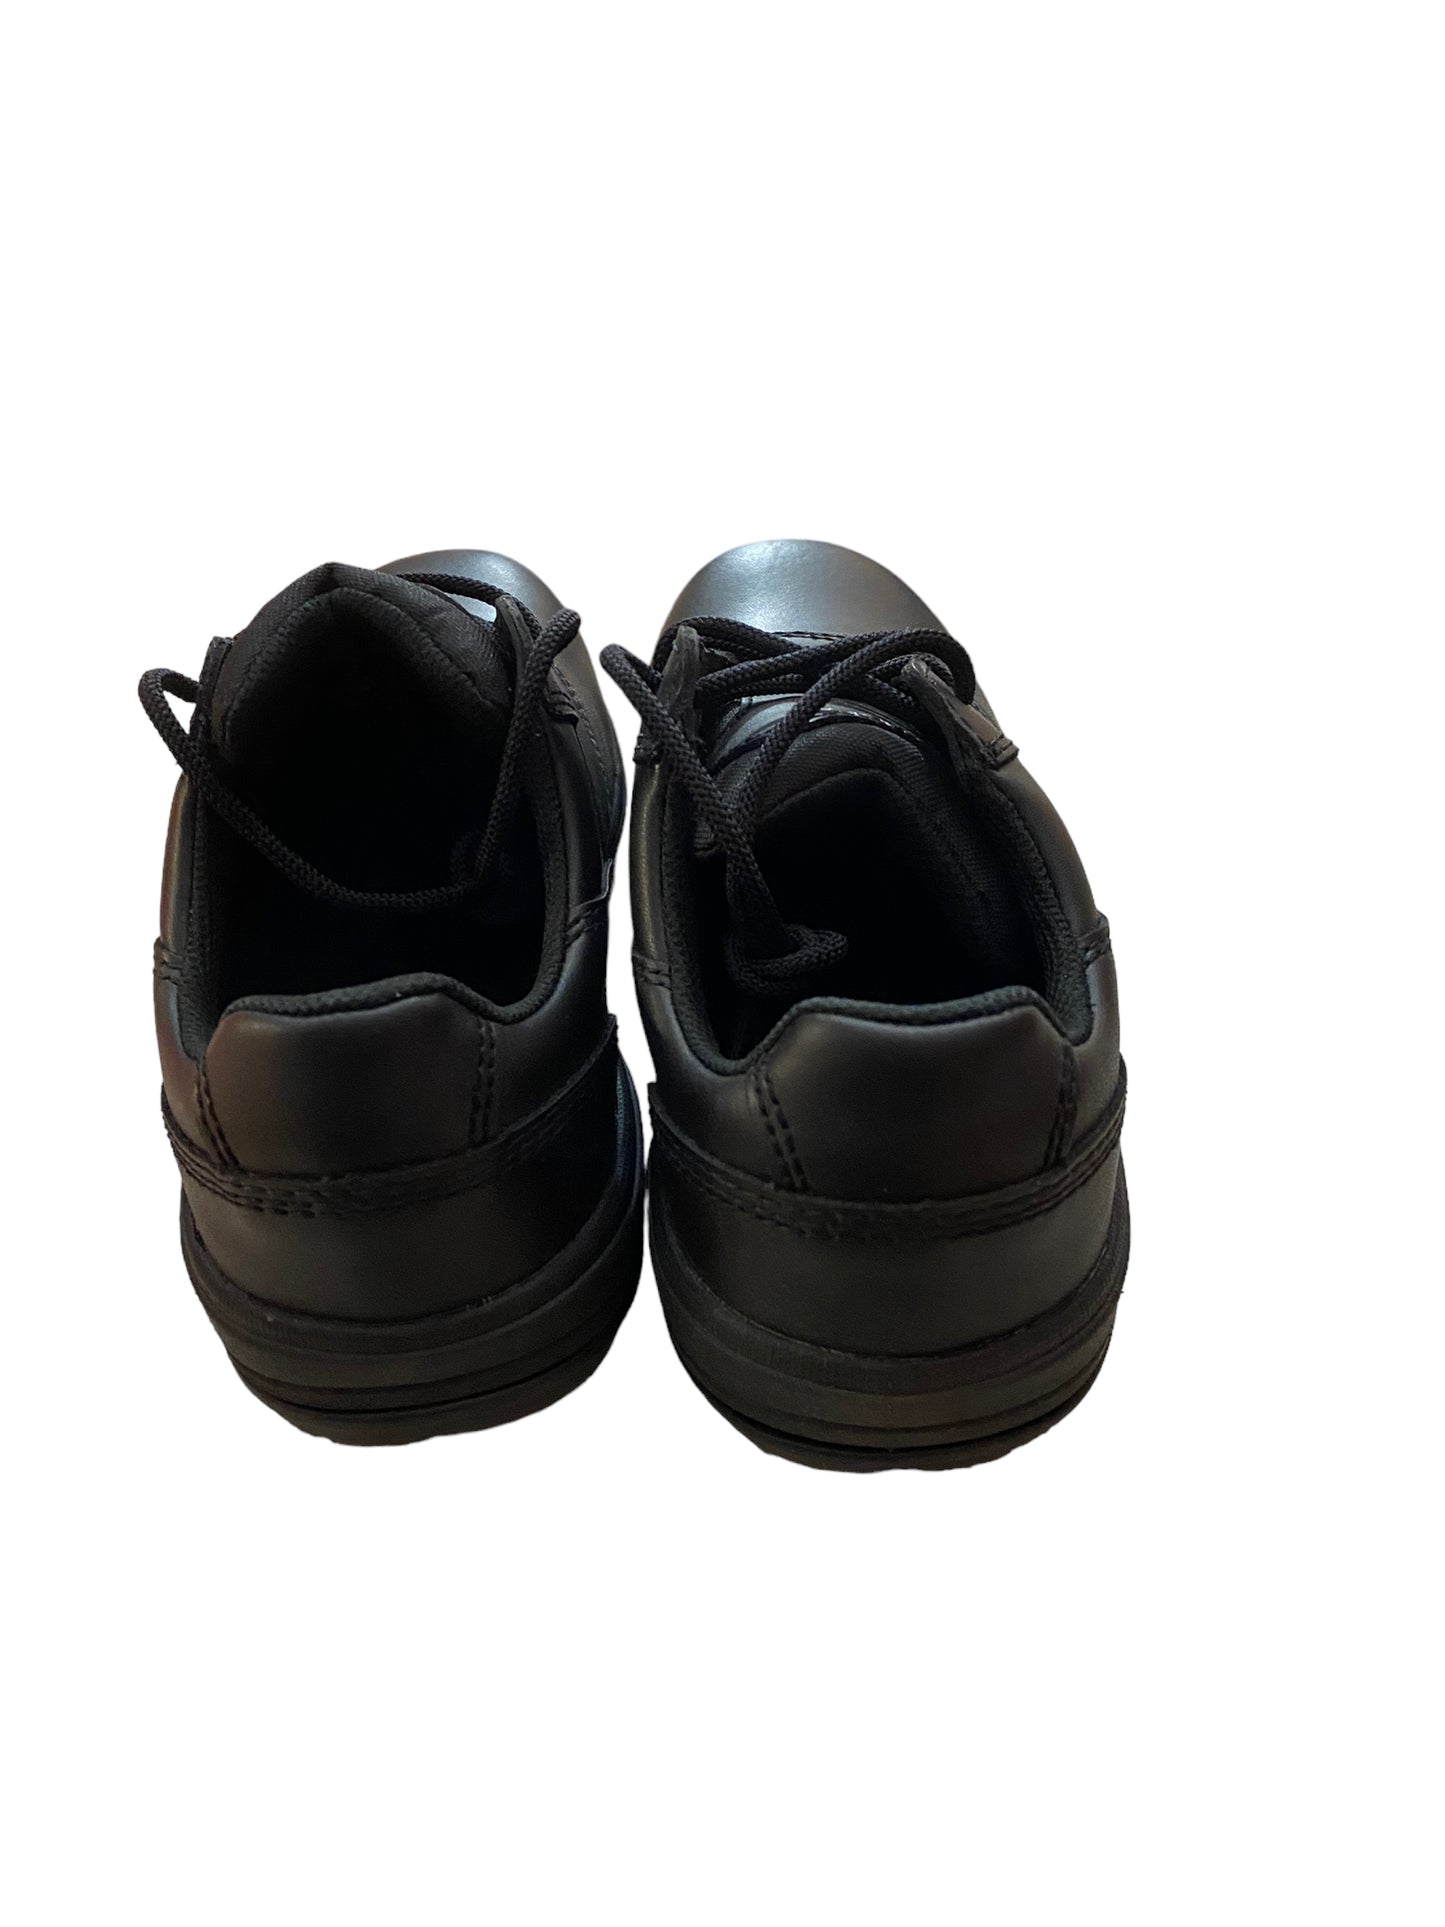 Worx Ladies  Black Casual Work Shoes